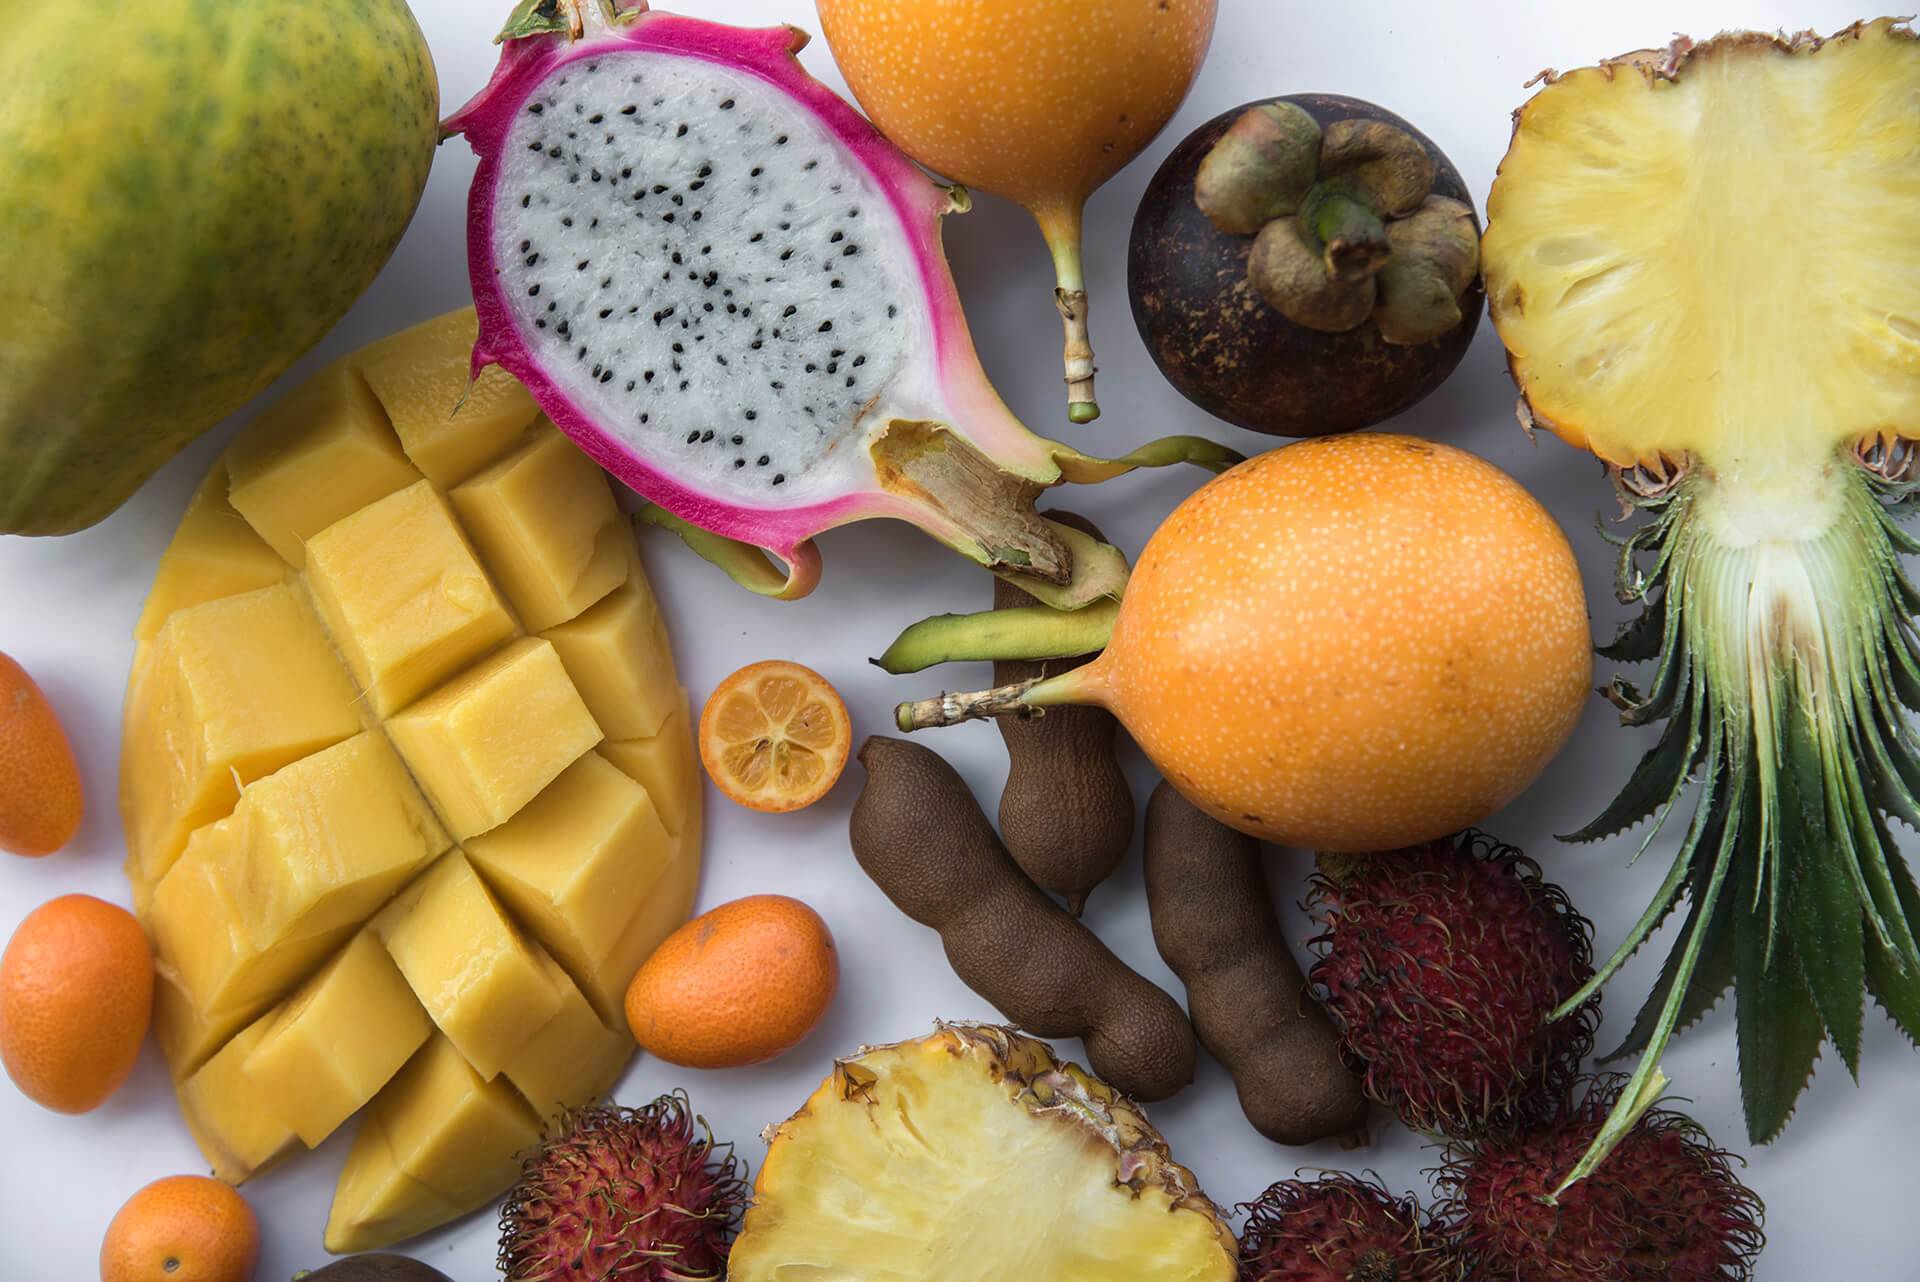 Фото фруктов и их названия. Тропические фрукты маракуйя личи папайя. Карибиан фрукт. Манго папайя маракуйя. Экзотические фрукты субтропиков.